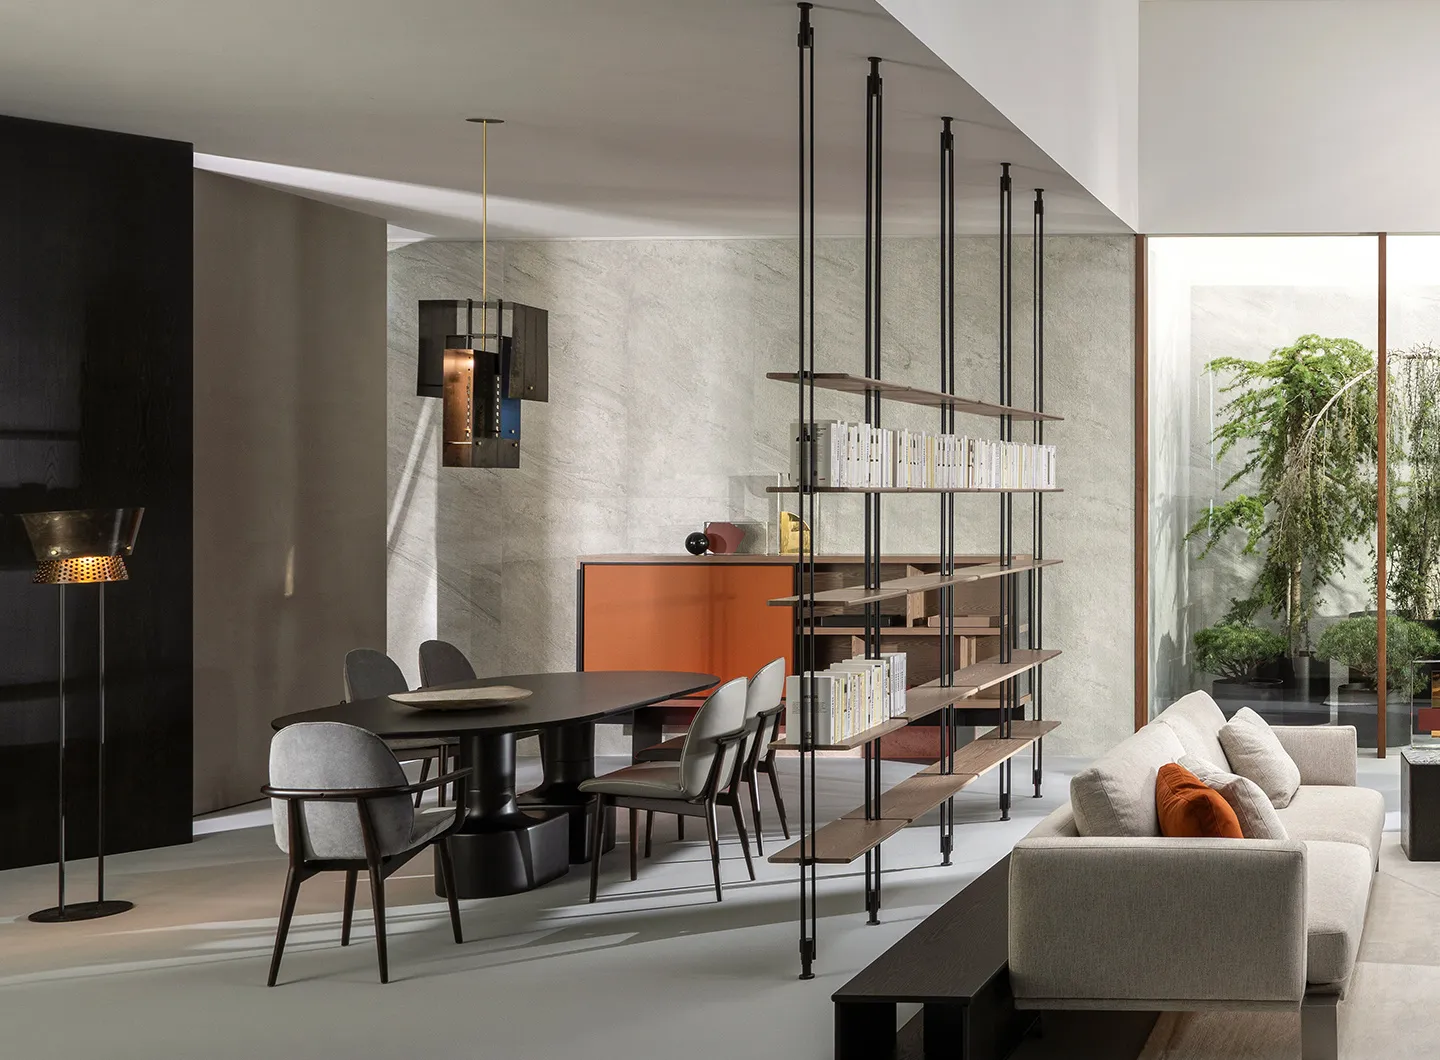 Seliano, Casa International 'Allover 2021' collection designed by Mauro Lipparini